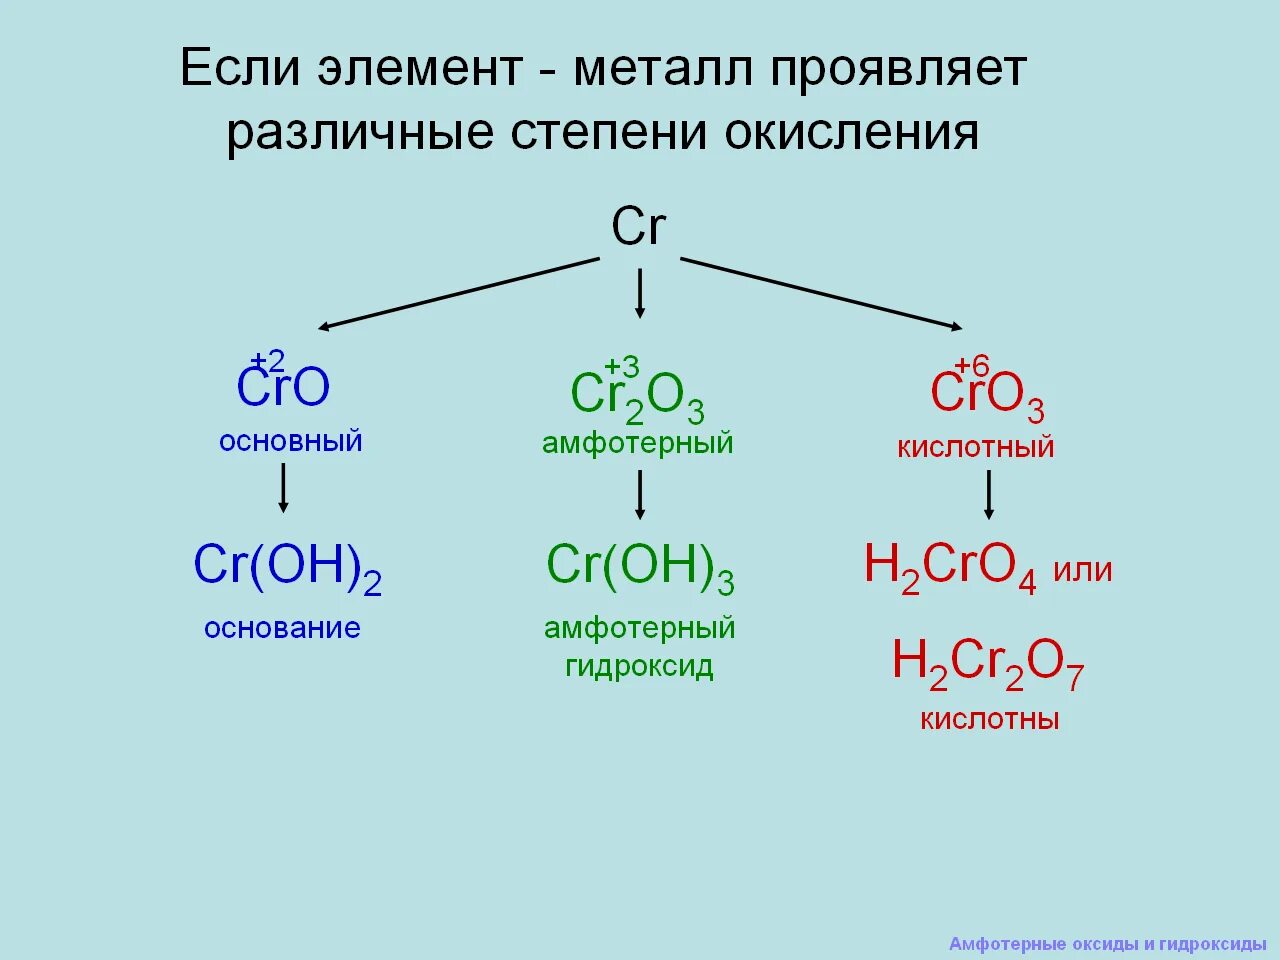 Названия амфотерных соединений из приведенного перечня. Амфотерные оксиды и гидроксиды 9 класс объяснение. Химия 8 класс амфотерные гидроксиды. Химия 9 класс амфотерные оксиды. Амфотерные оксиды и гидроксиды 8 класс конспект.